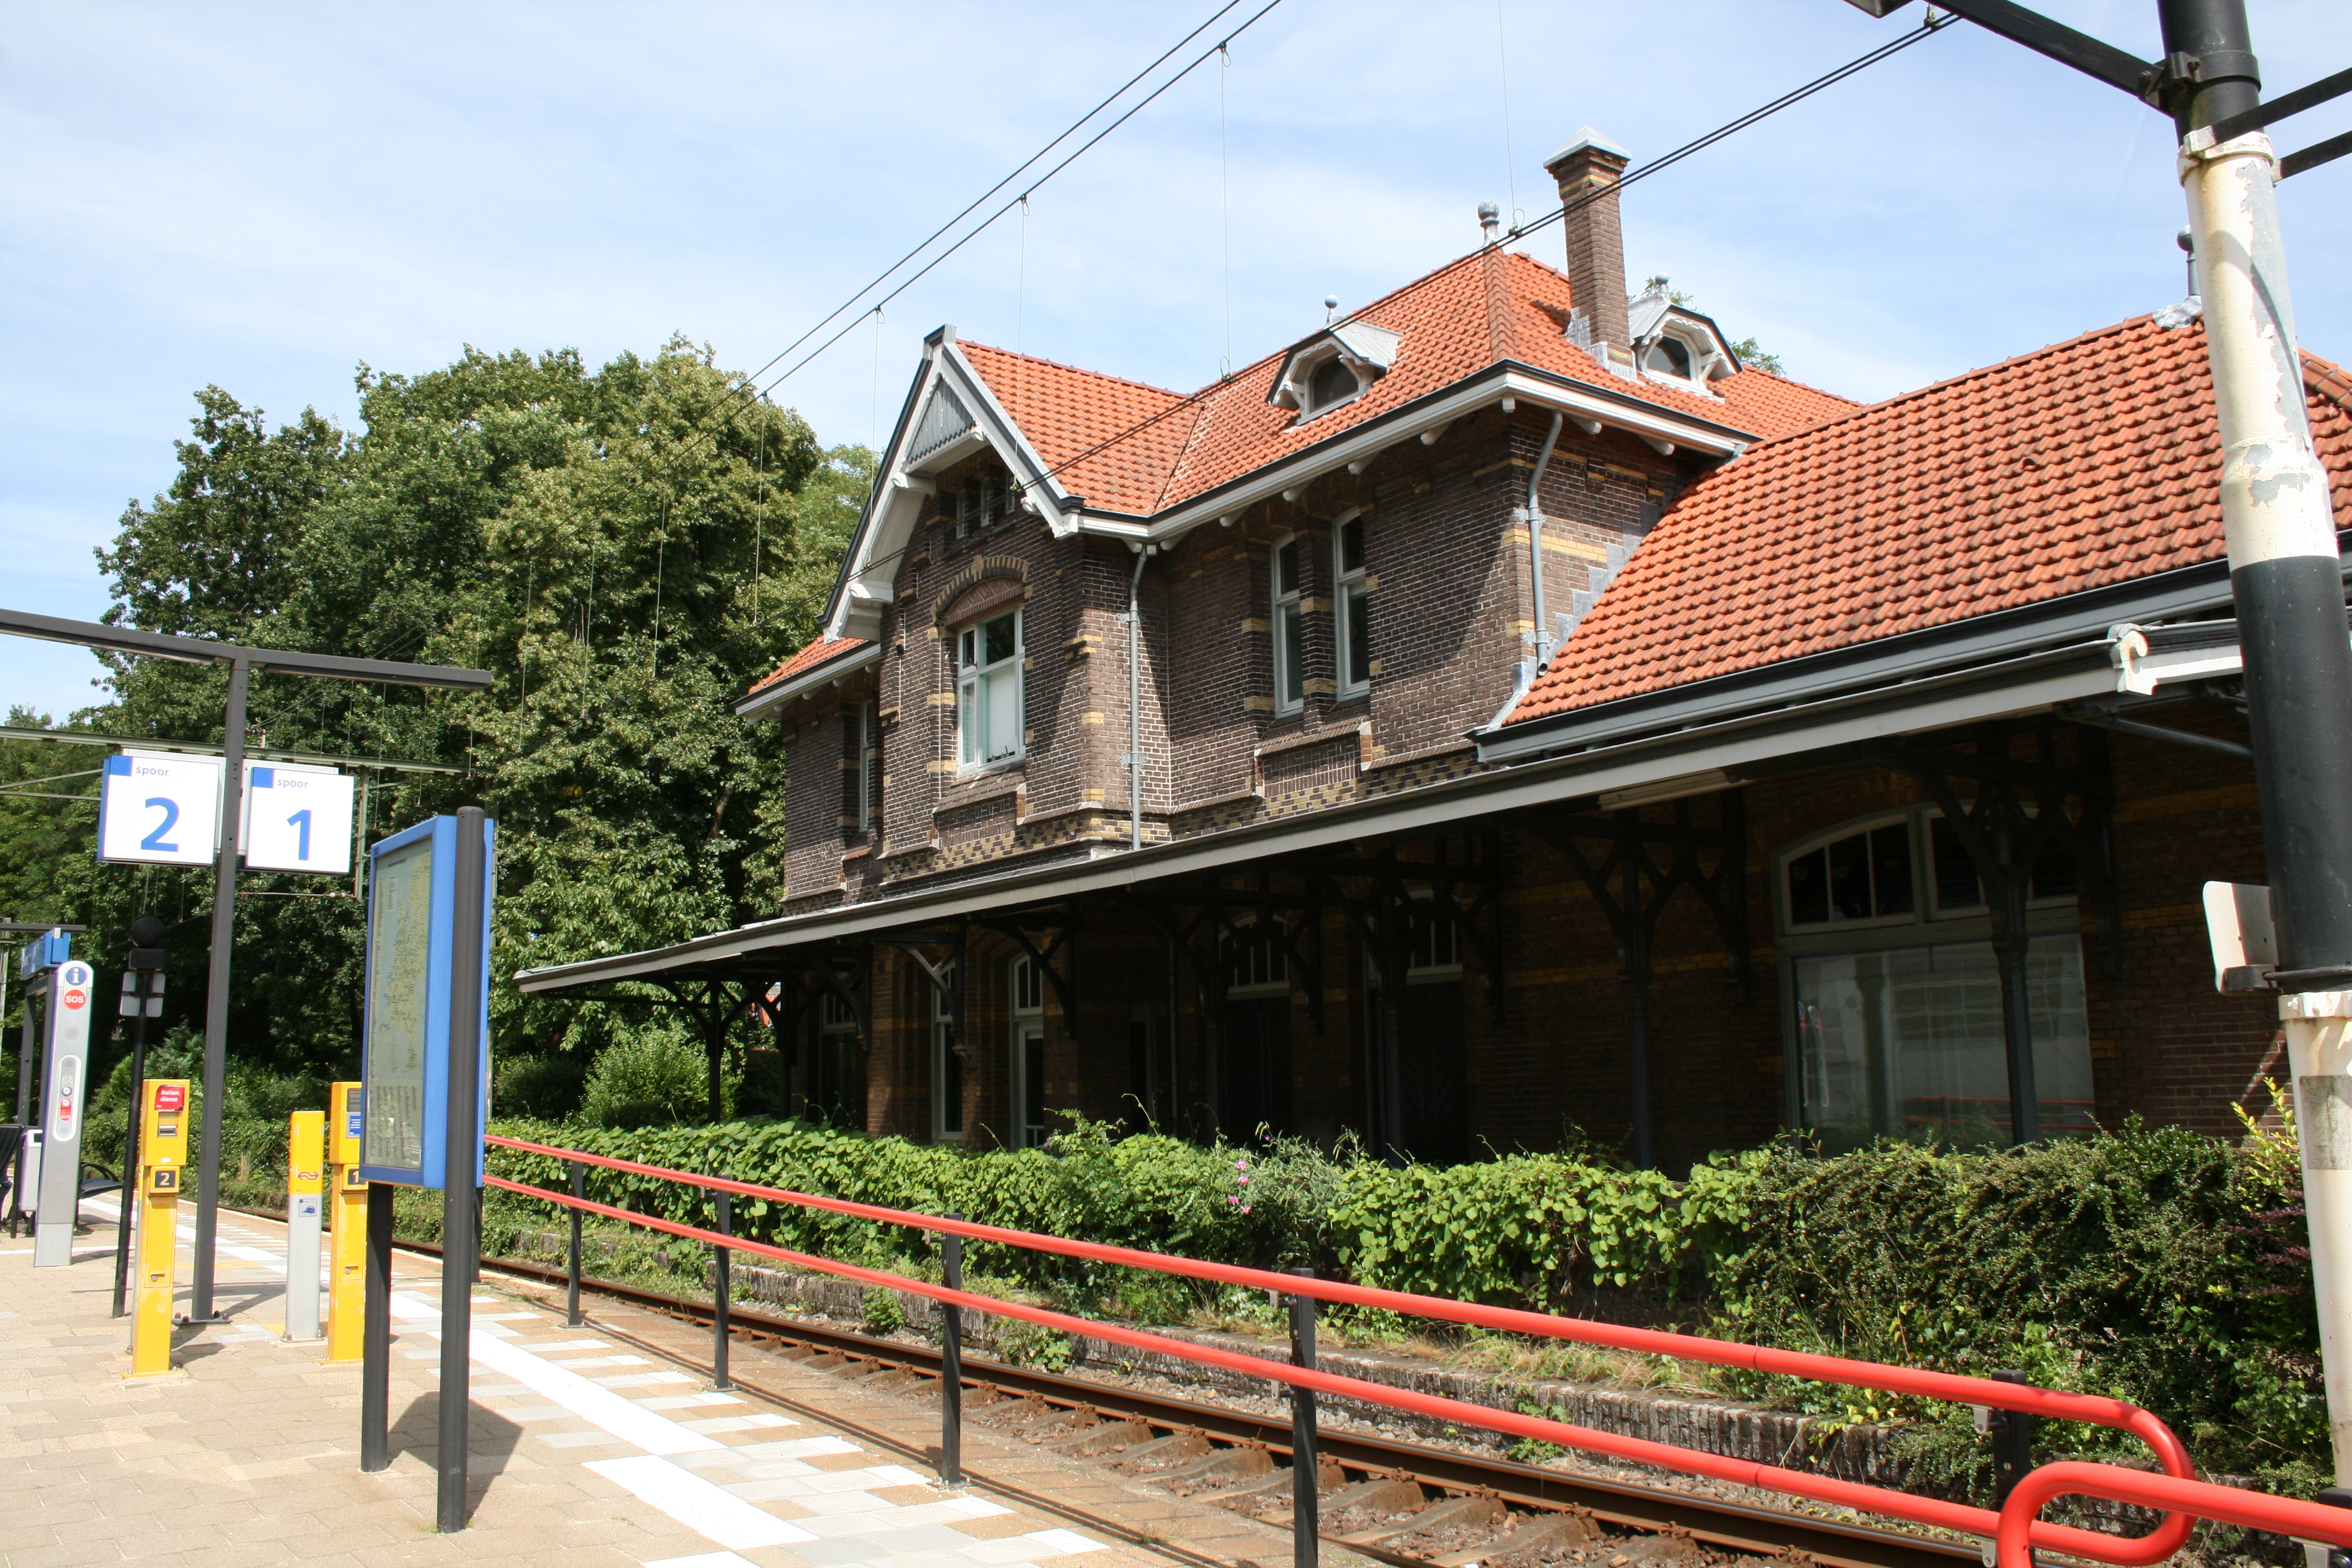 Station Soest